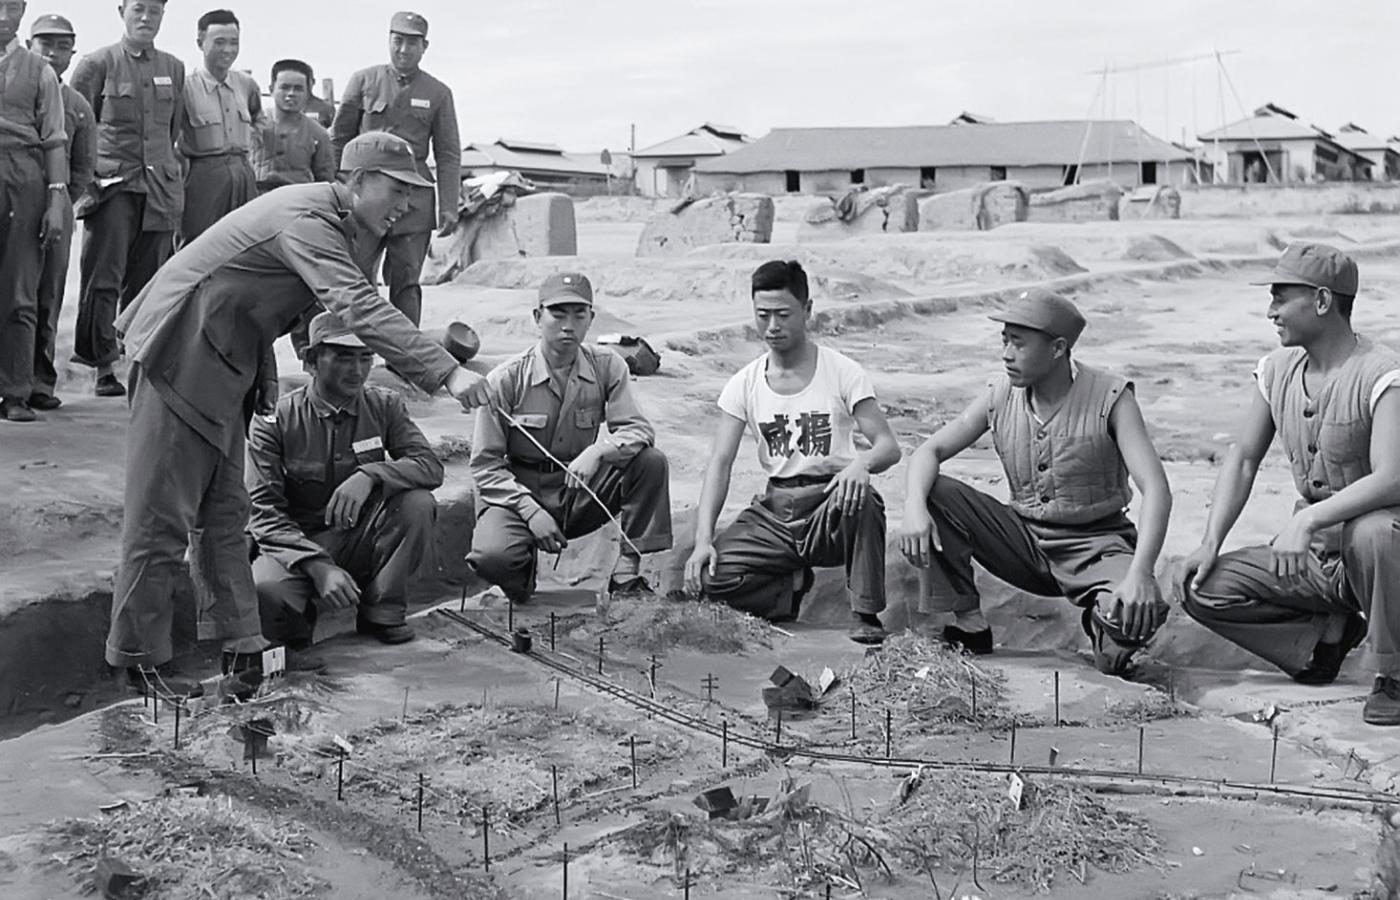 Ćwiczenia dla obrony wyspy, Tajwan, 1954 r.